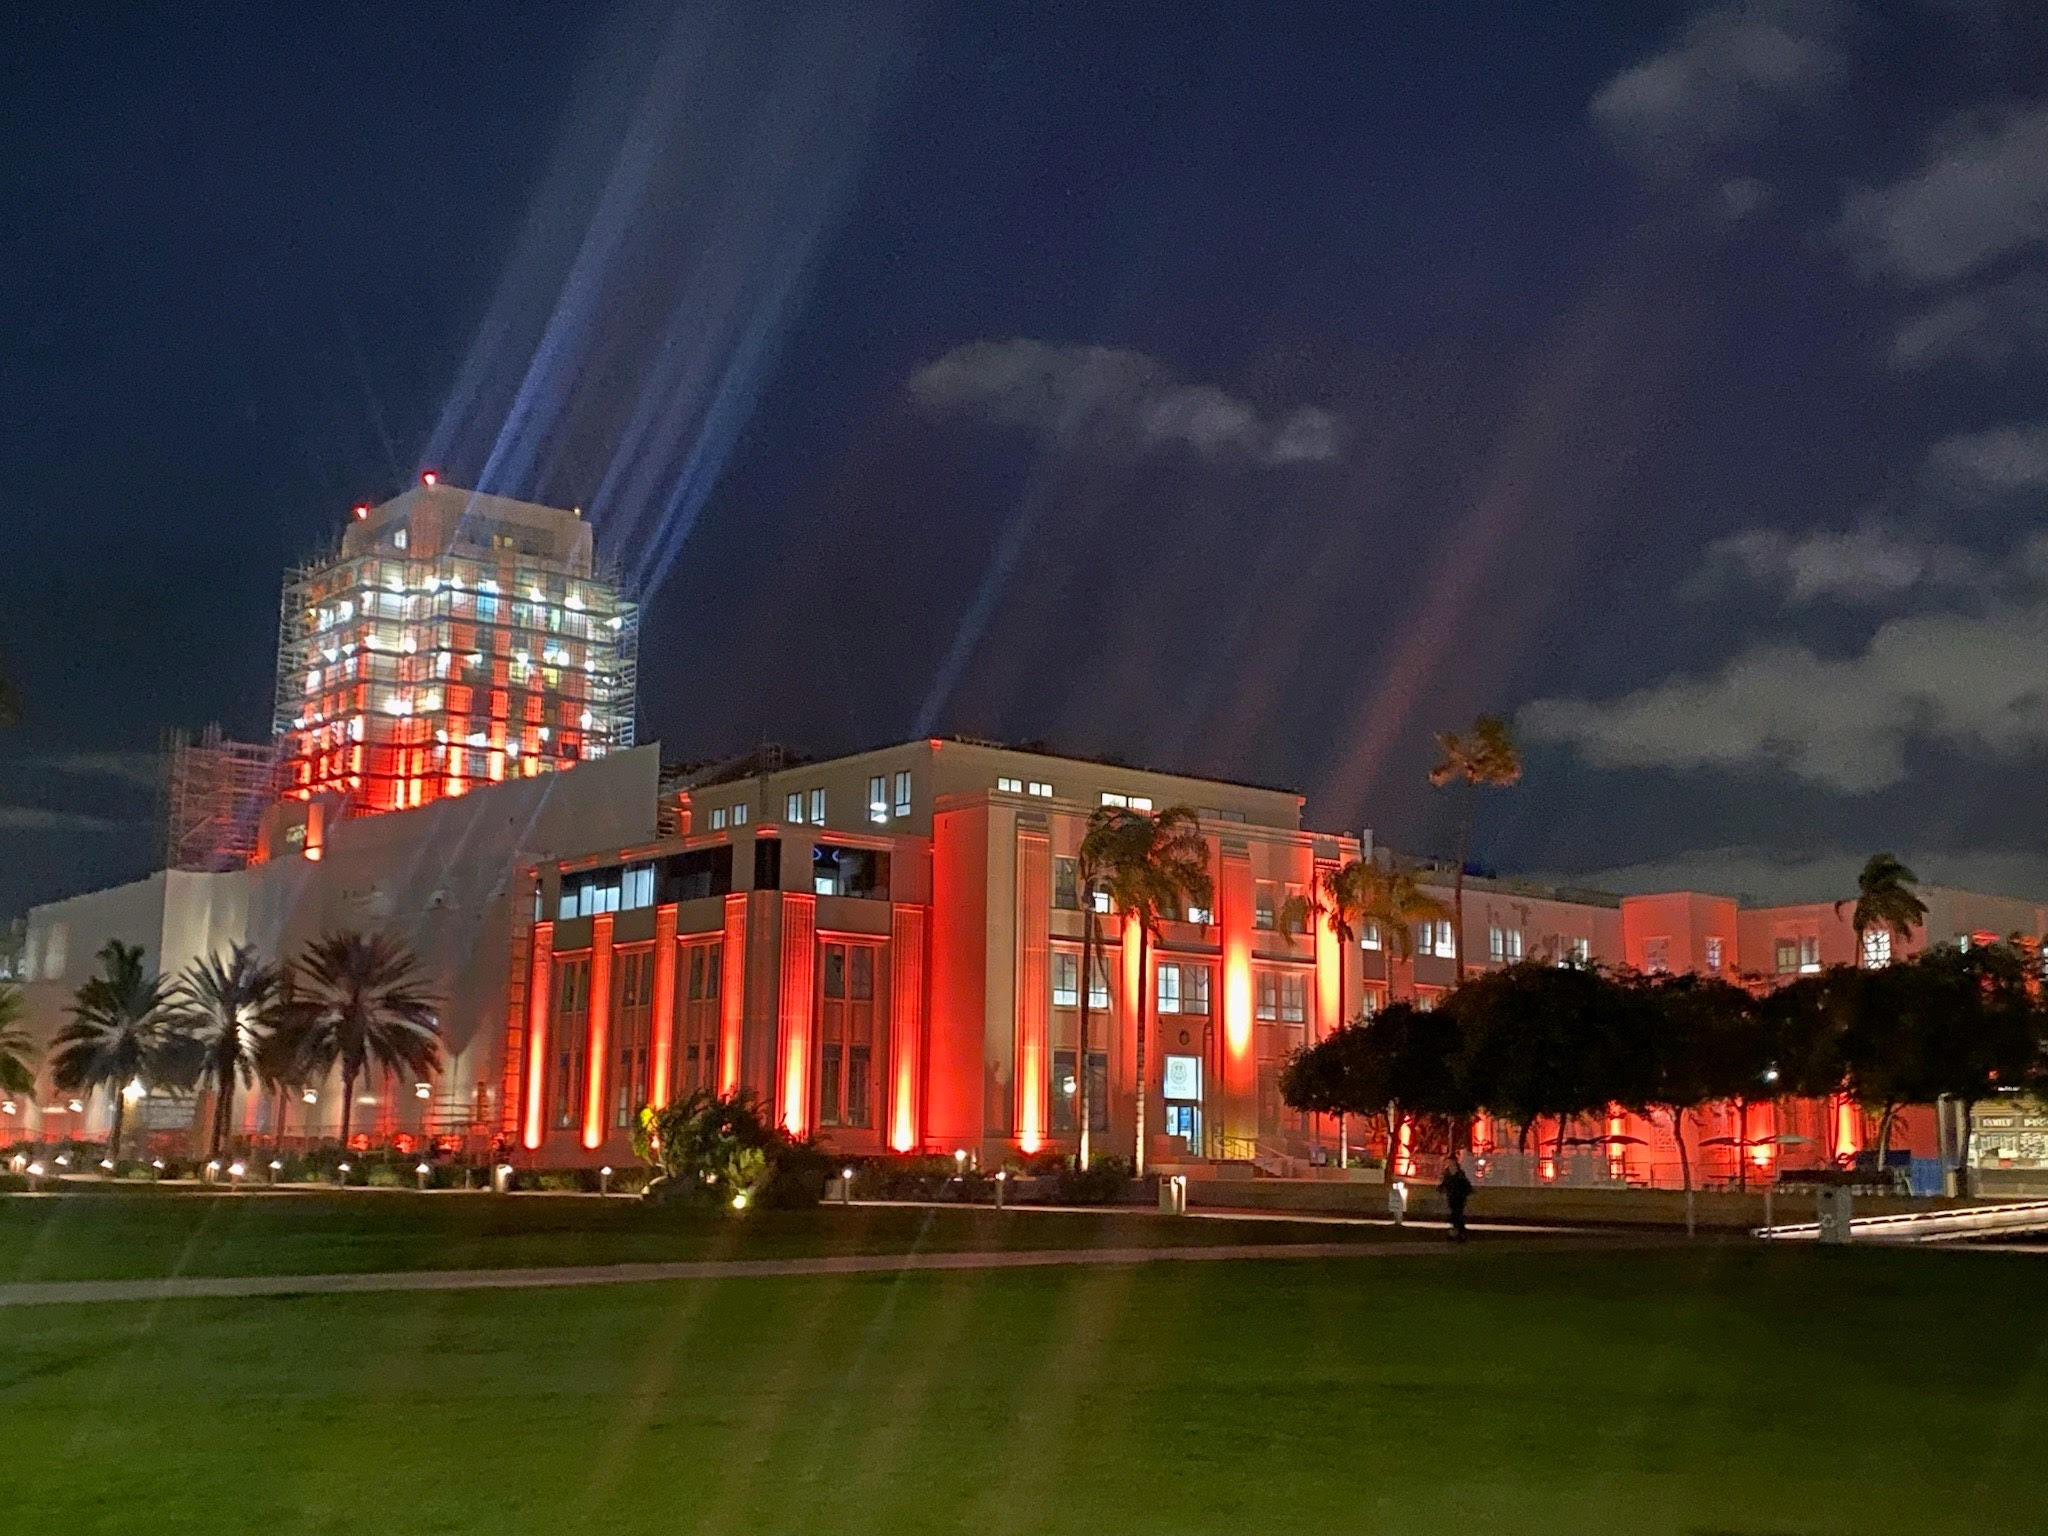 Le bâtiment administratif du comté de San Diego, un grand bâtiment rectangulaire, est représenté sous un ciel nocturne partiellement nuageux et est éclairé par des néons orange vif sur la façade du bâtiment.